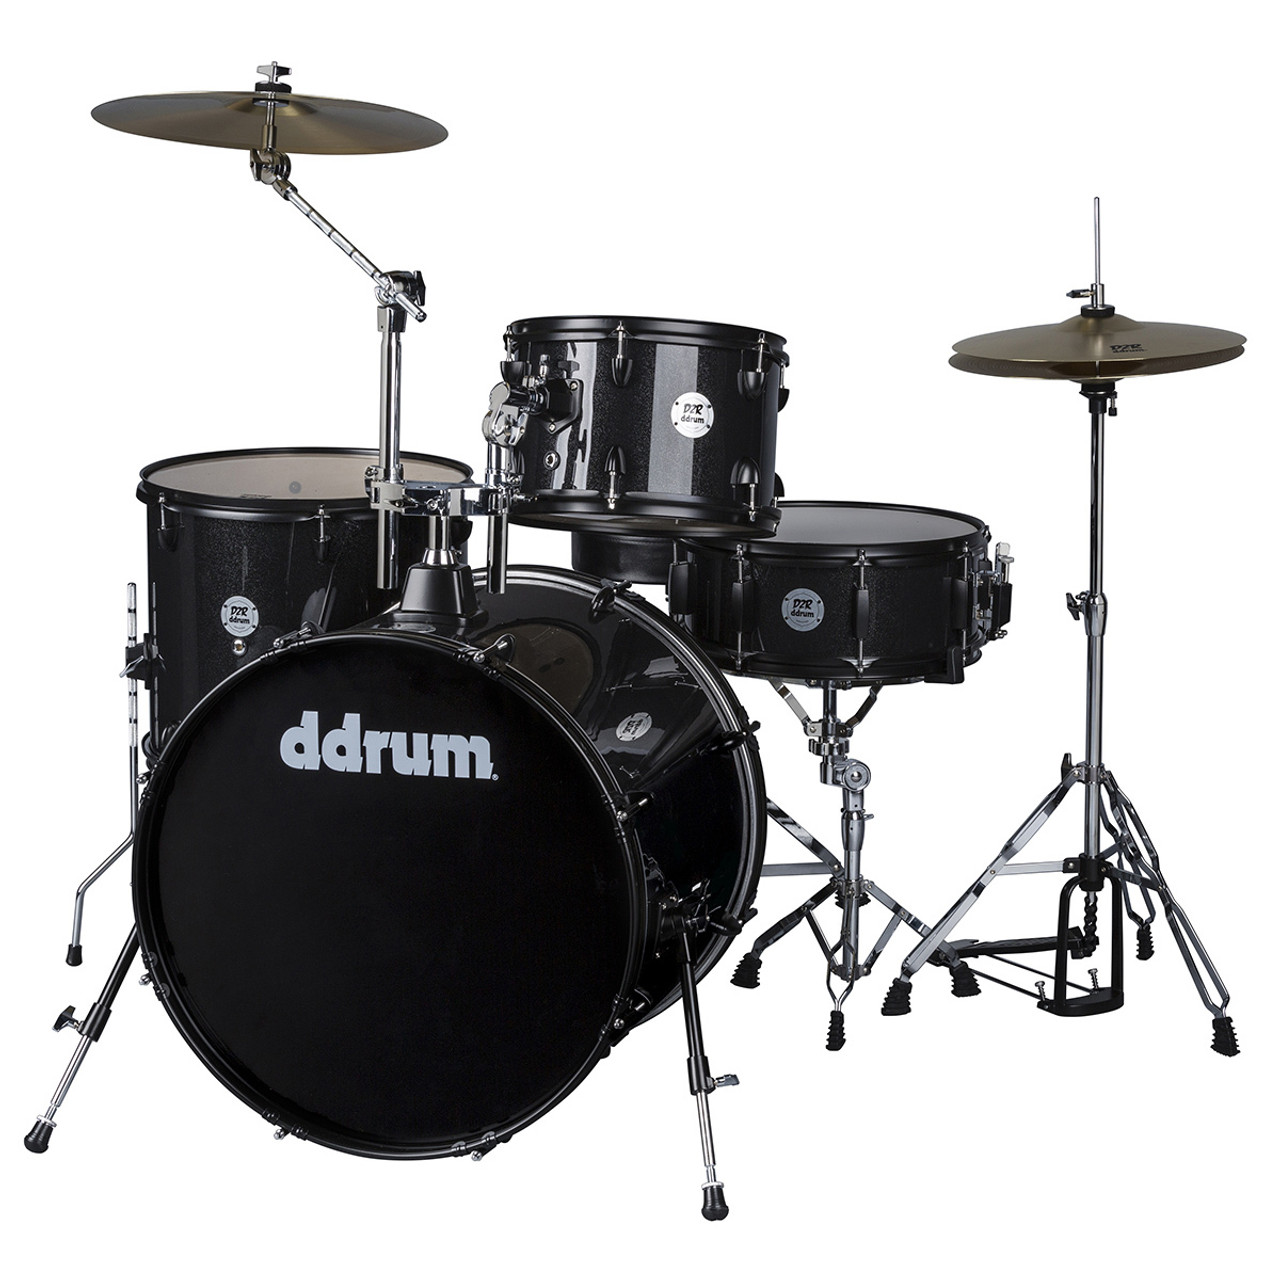 d drum D2 ROCK - BLACK SPARKLE- COMPLETE 4PC. DRUM SET WITH